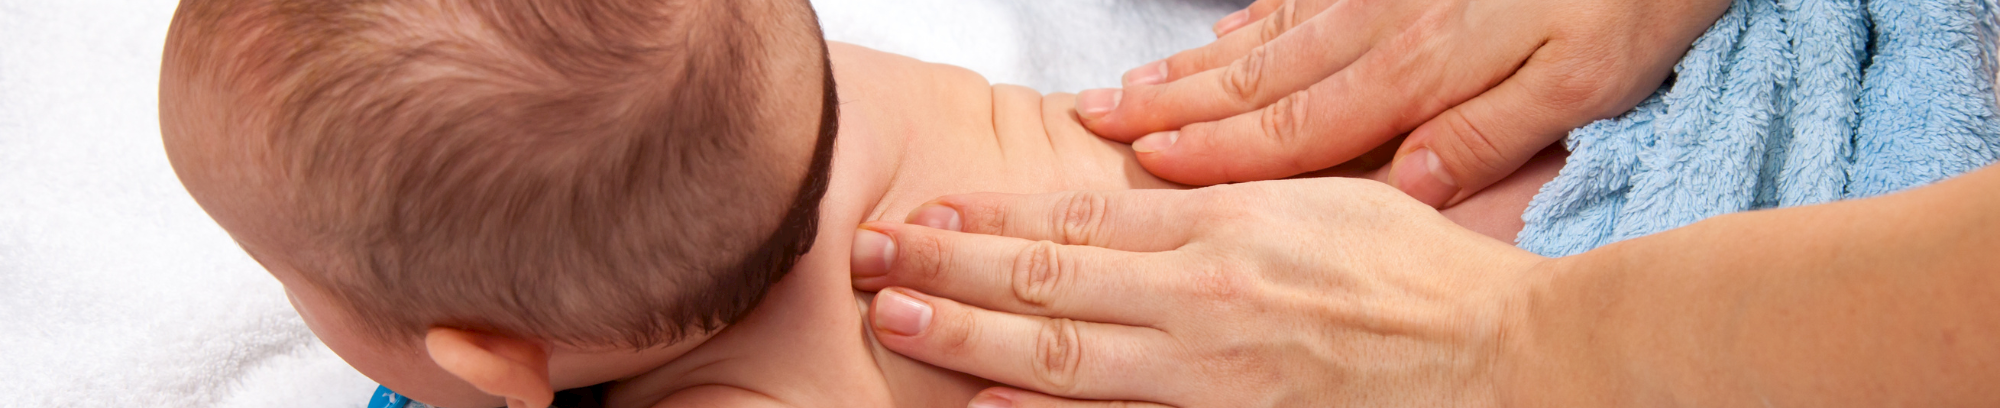 Lær babymassage hos FOF Syd- og Vestsjælland